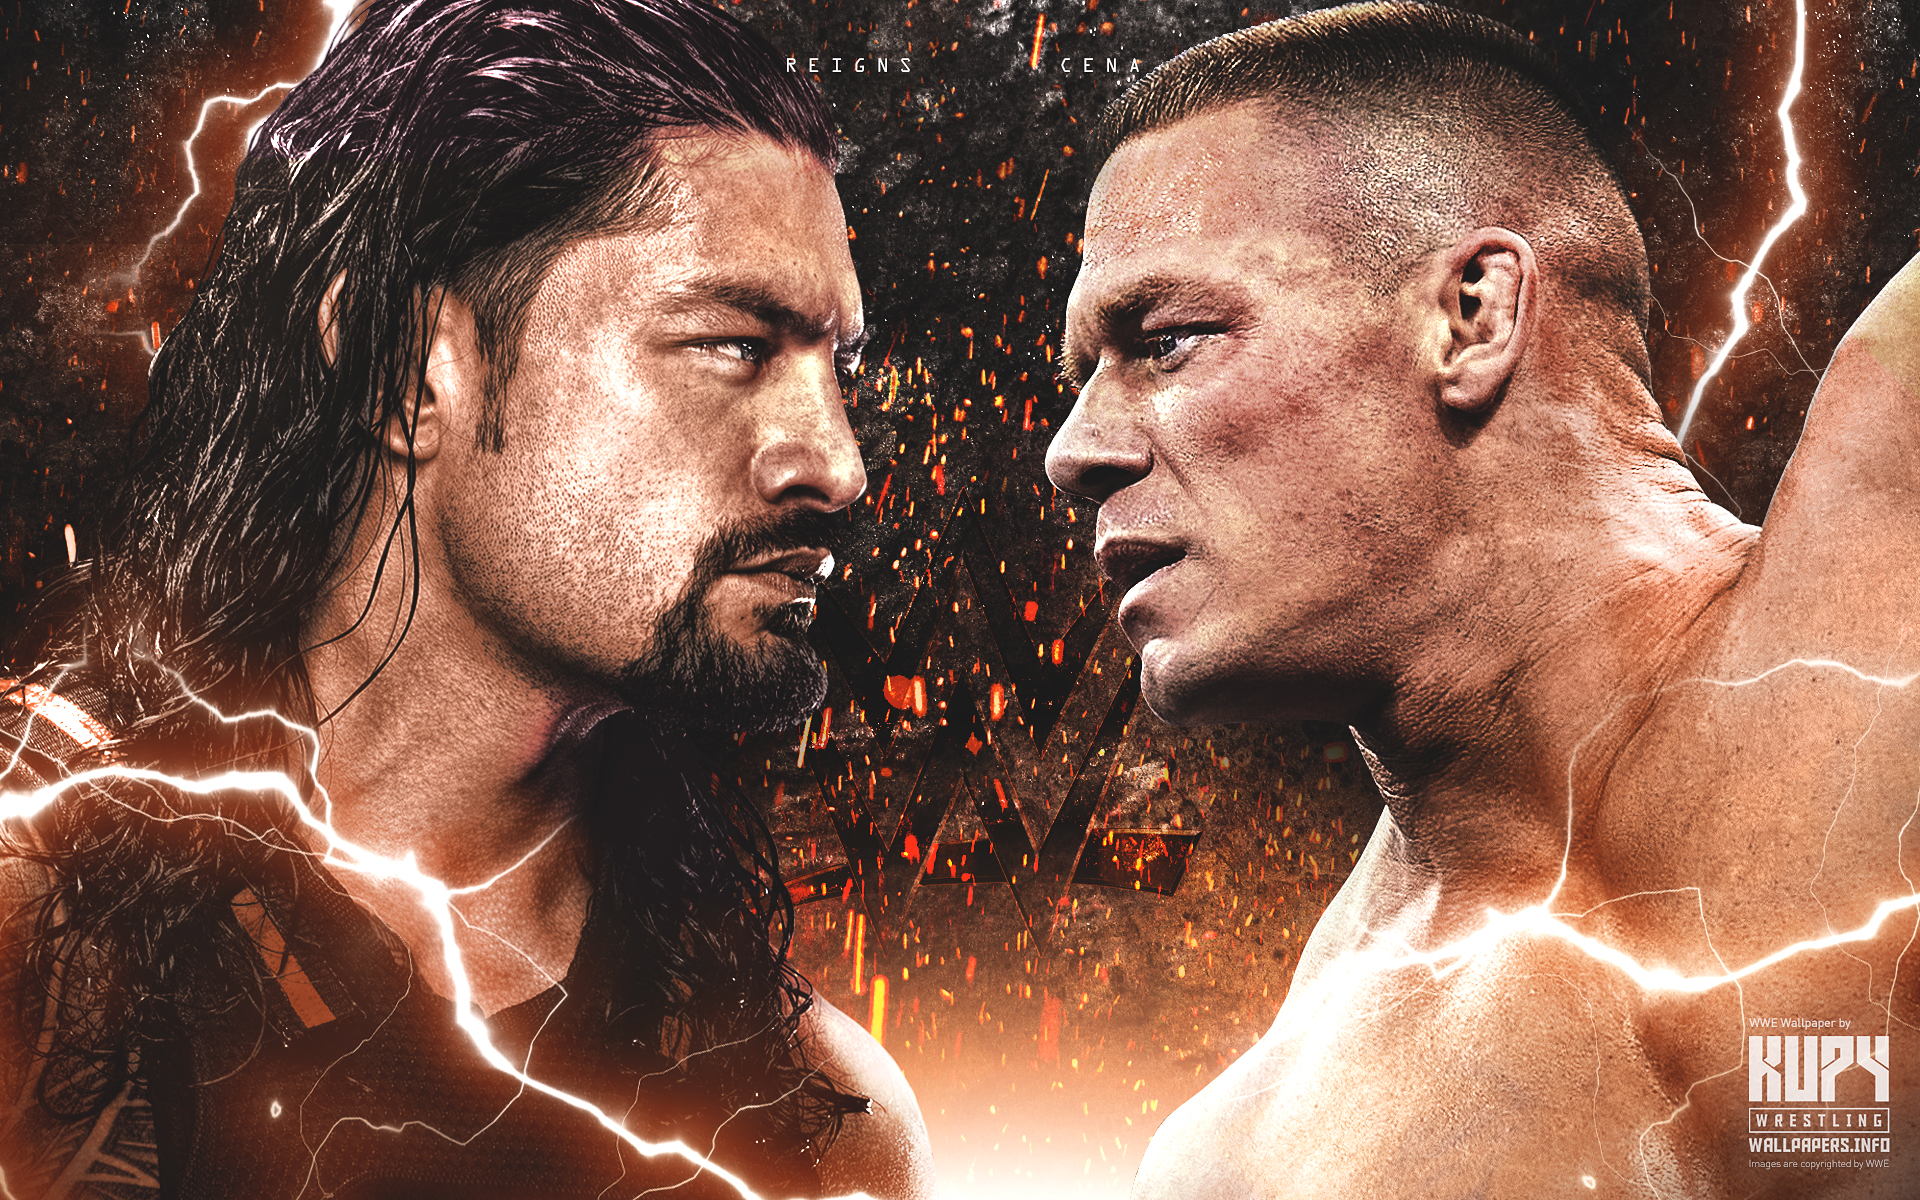 New Roman Reigns Vs John Cena Wallpaper Kupy Wrestling